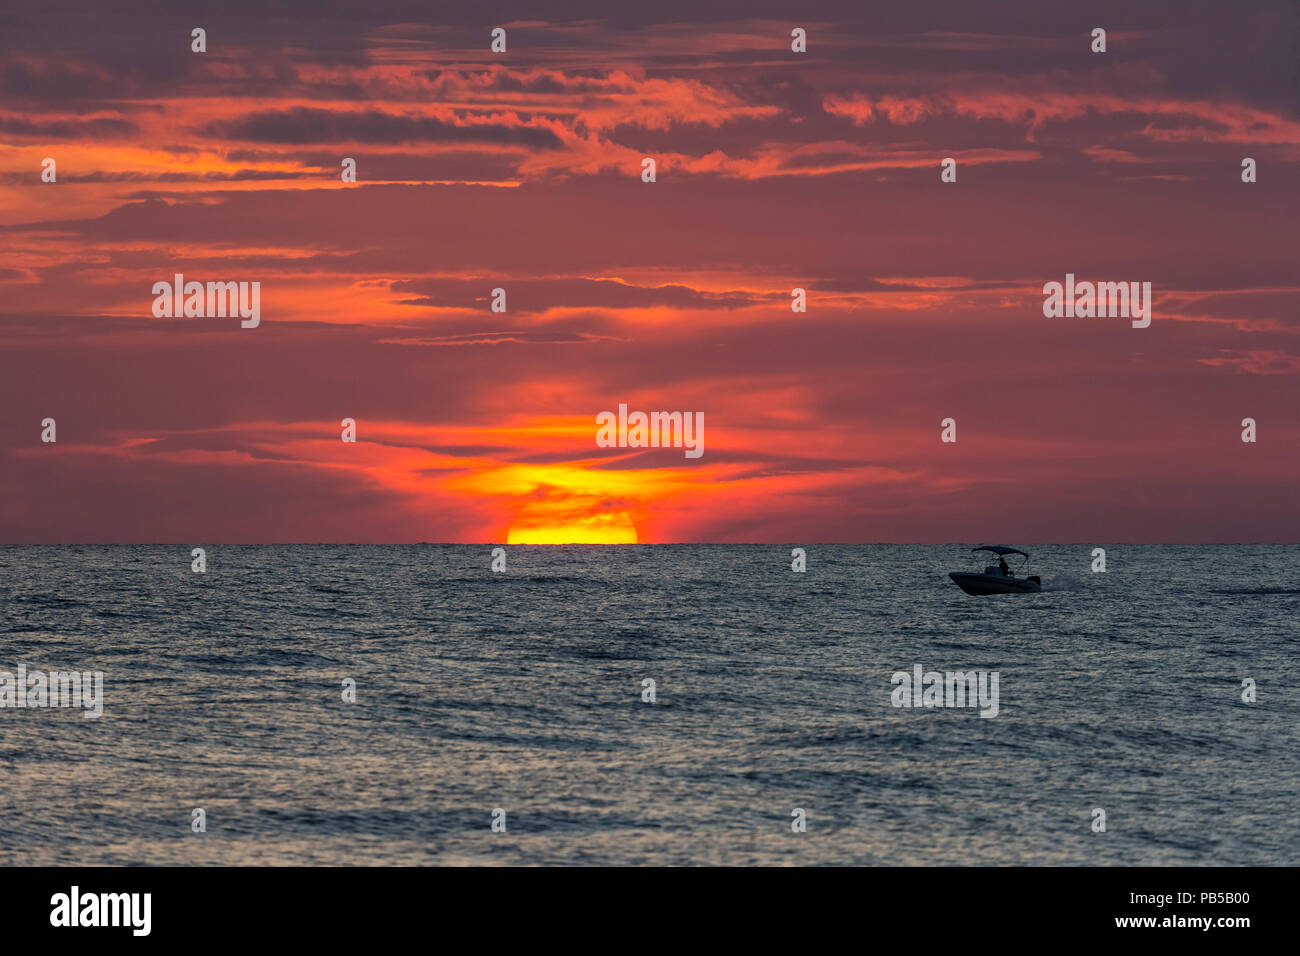 Piccola barca con il sole che tramonta parially dietro le nuvole in cielo arancione sull'acqua nel Golfo del Messico Foto Stock